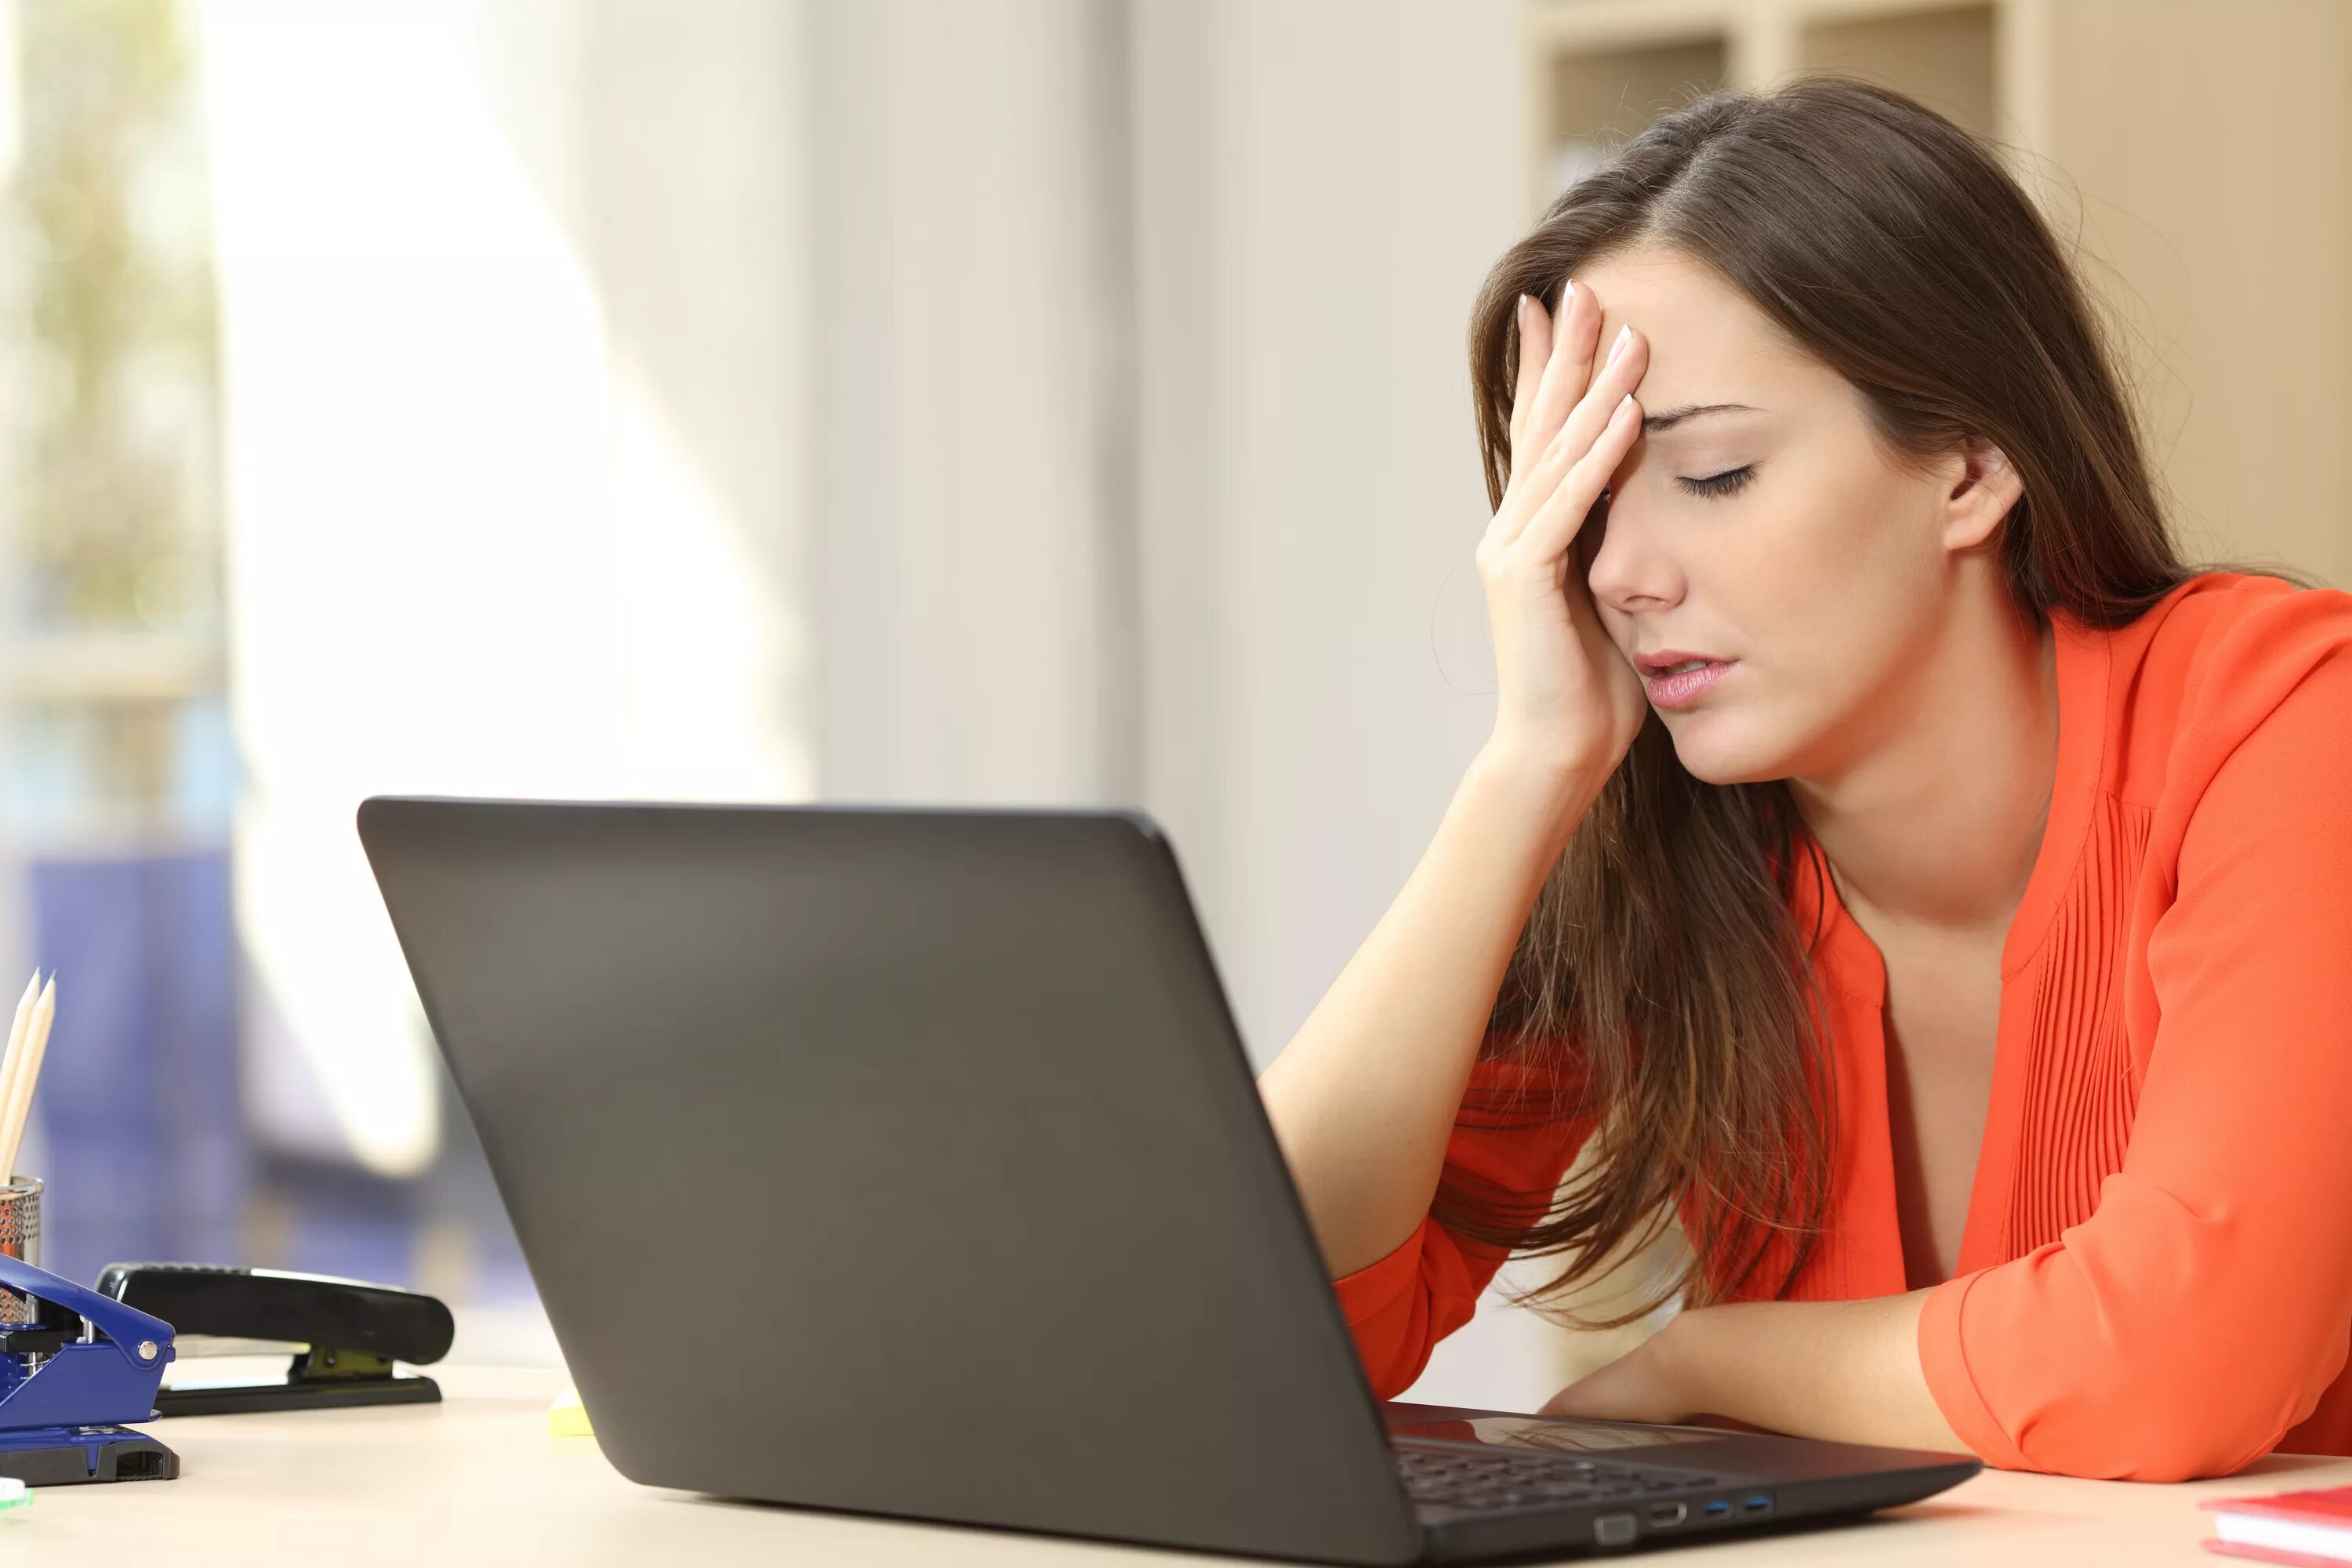 Work badly. Стресс за компьютером. Женщина в стрессе. Уставшая женщина за компьютером. Усталость за компьютером.